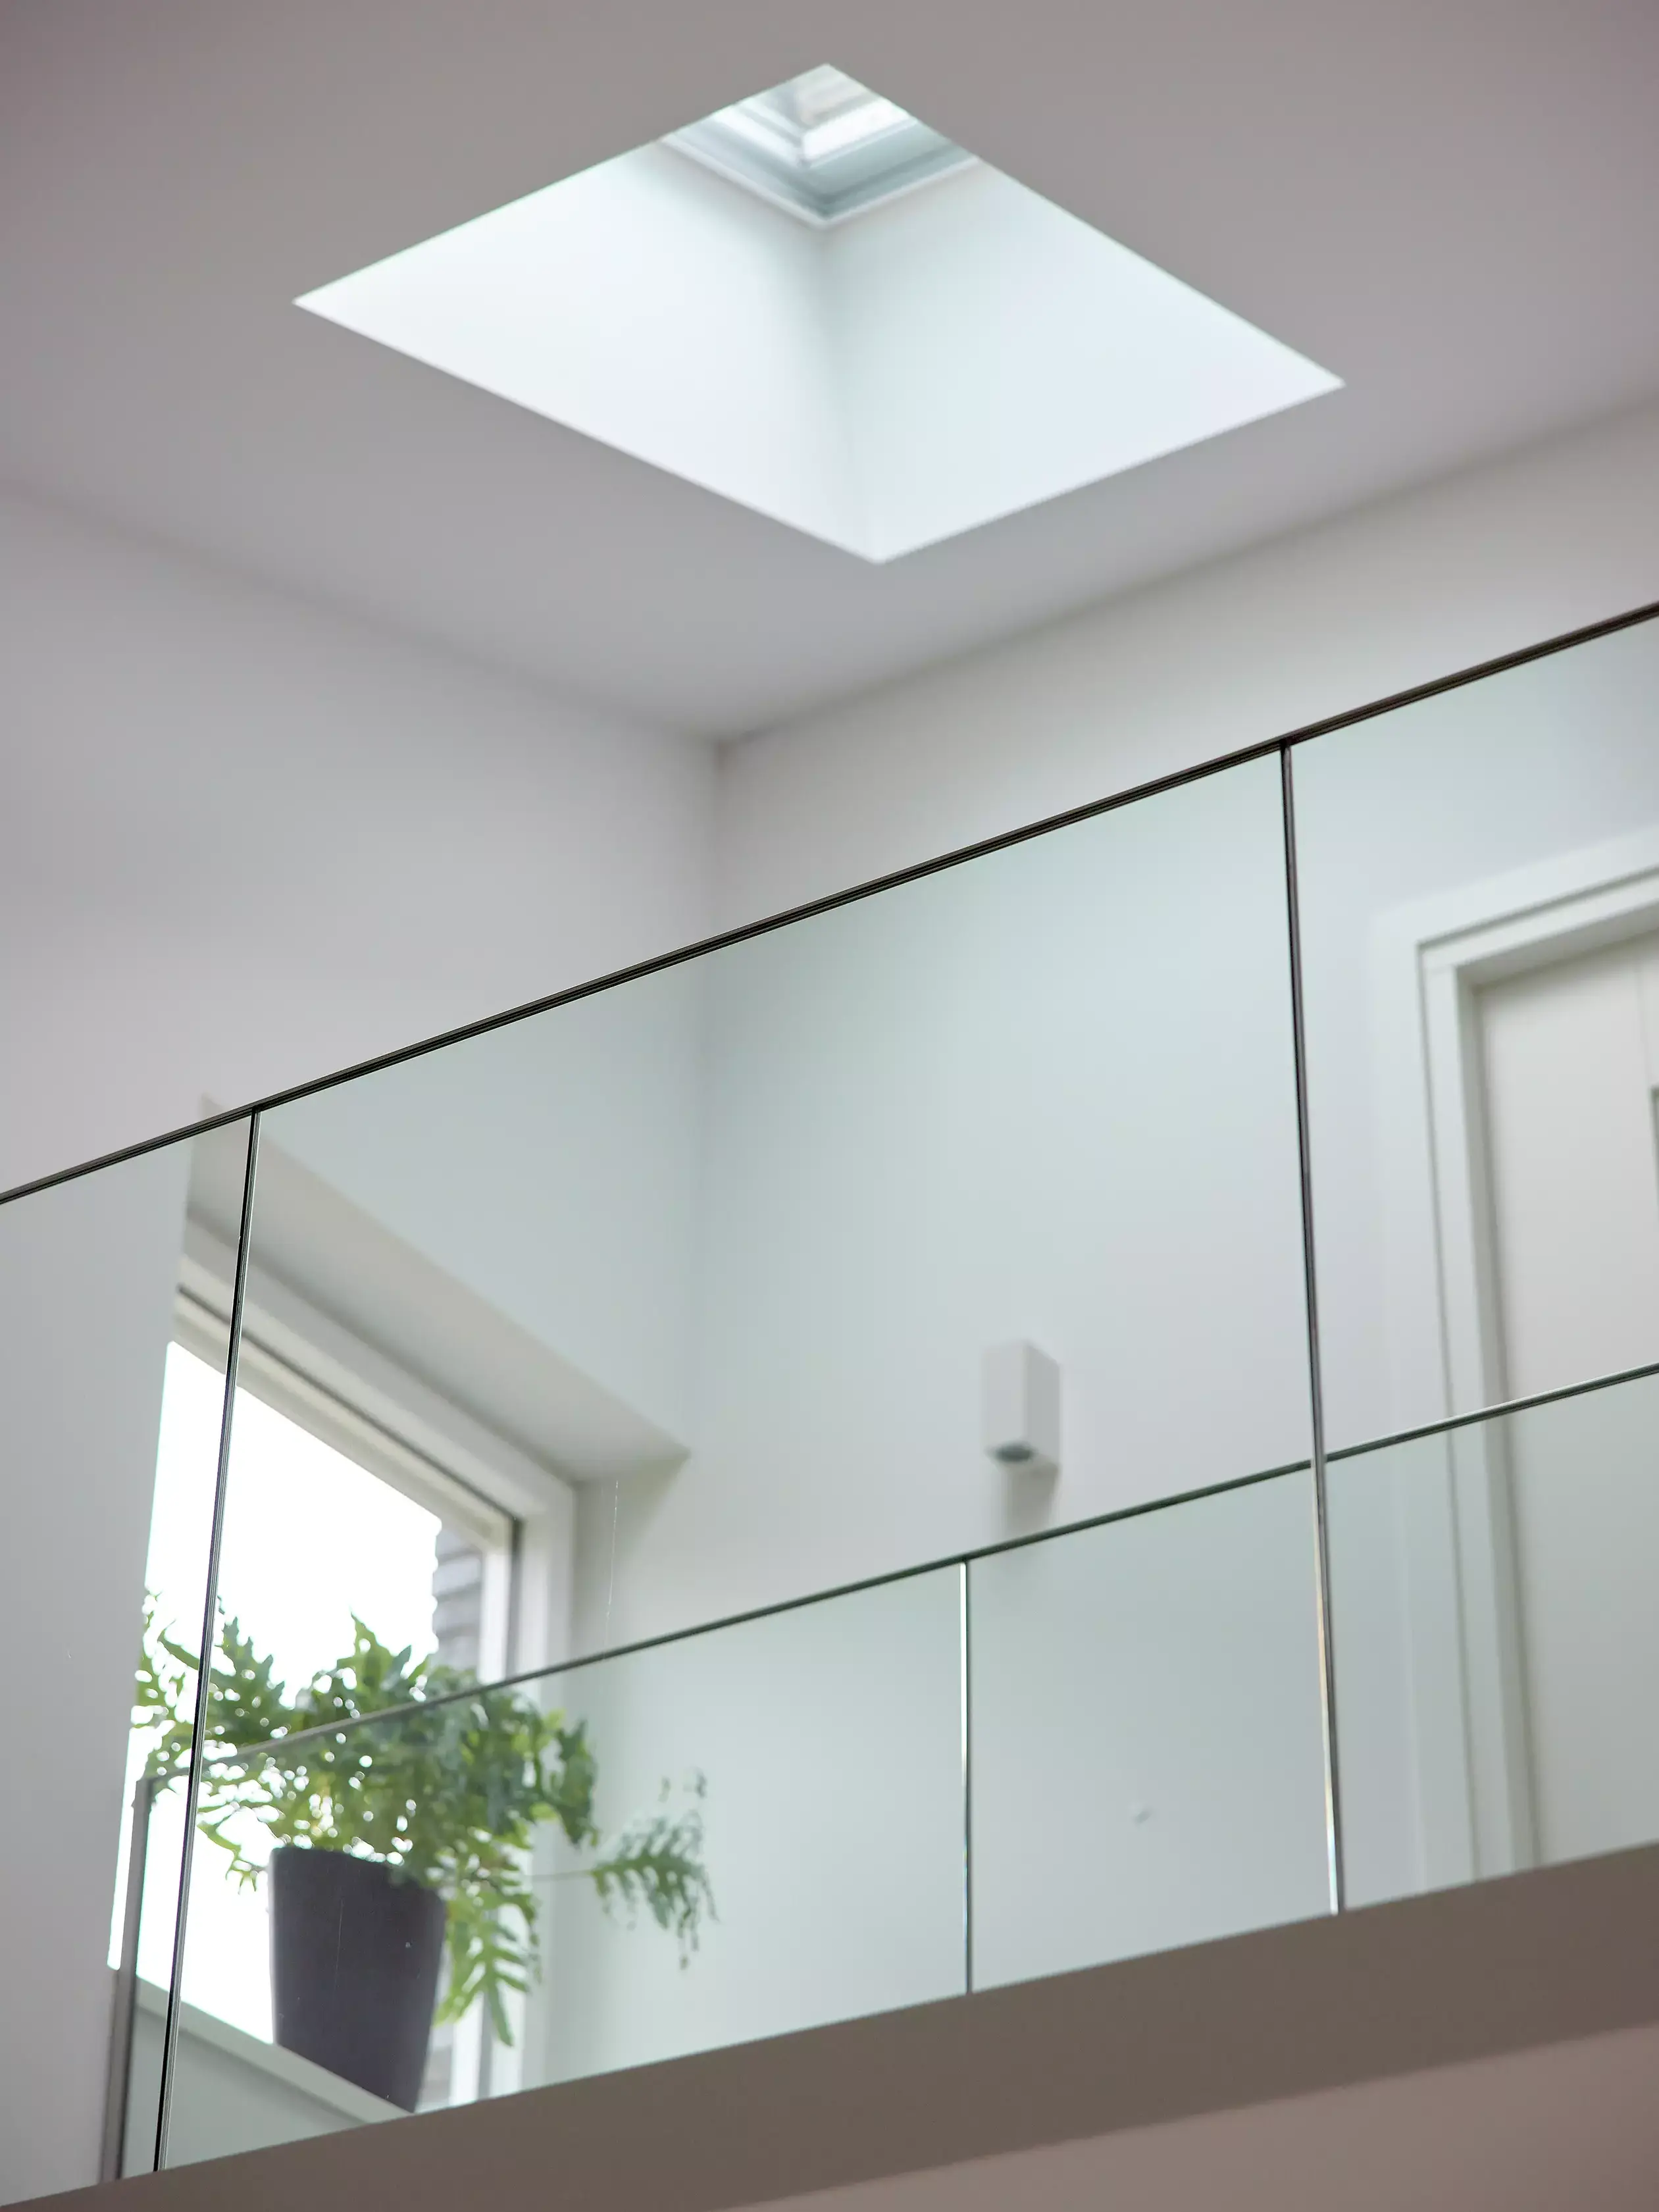 Intérieur minimaliste avec fenêtre de toit VELUX et balustrade en verre reflétant la lumière naturelle.